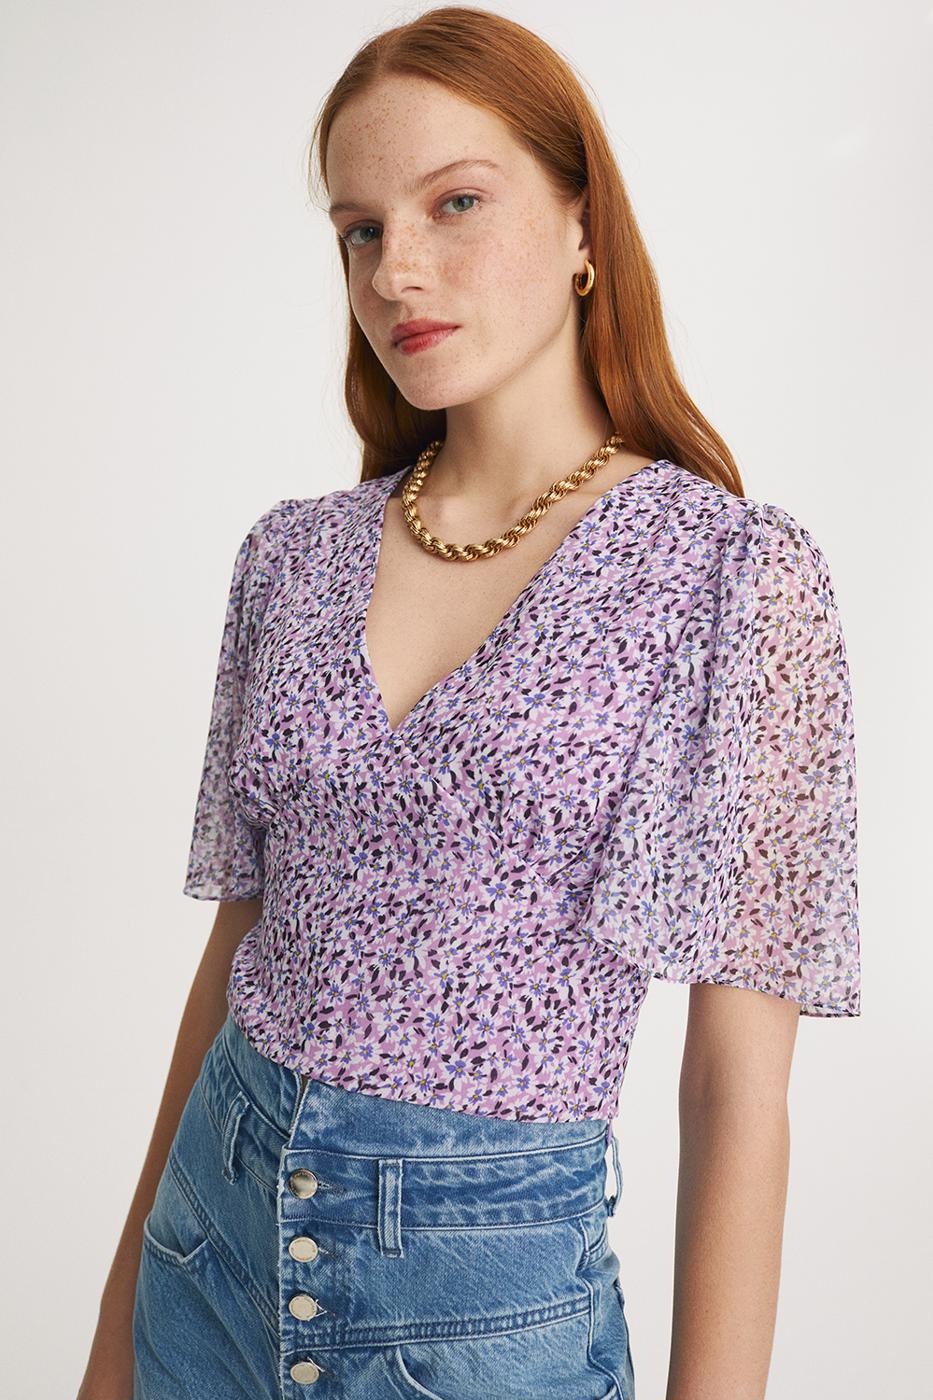 Bayan MOR Şally Slim Fit V-Yaka Çiçek Desenli Menekşe Renk Kadın Crop Bluz